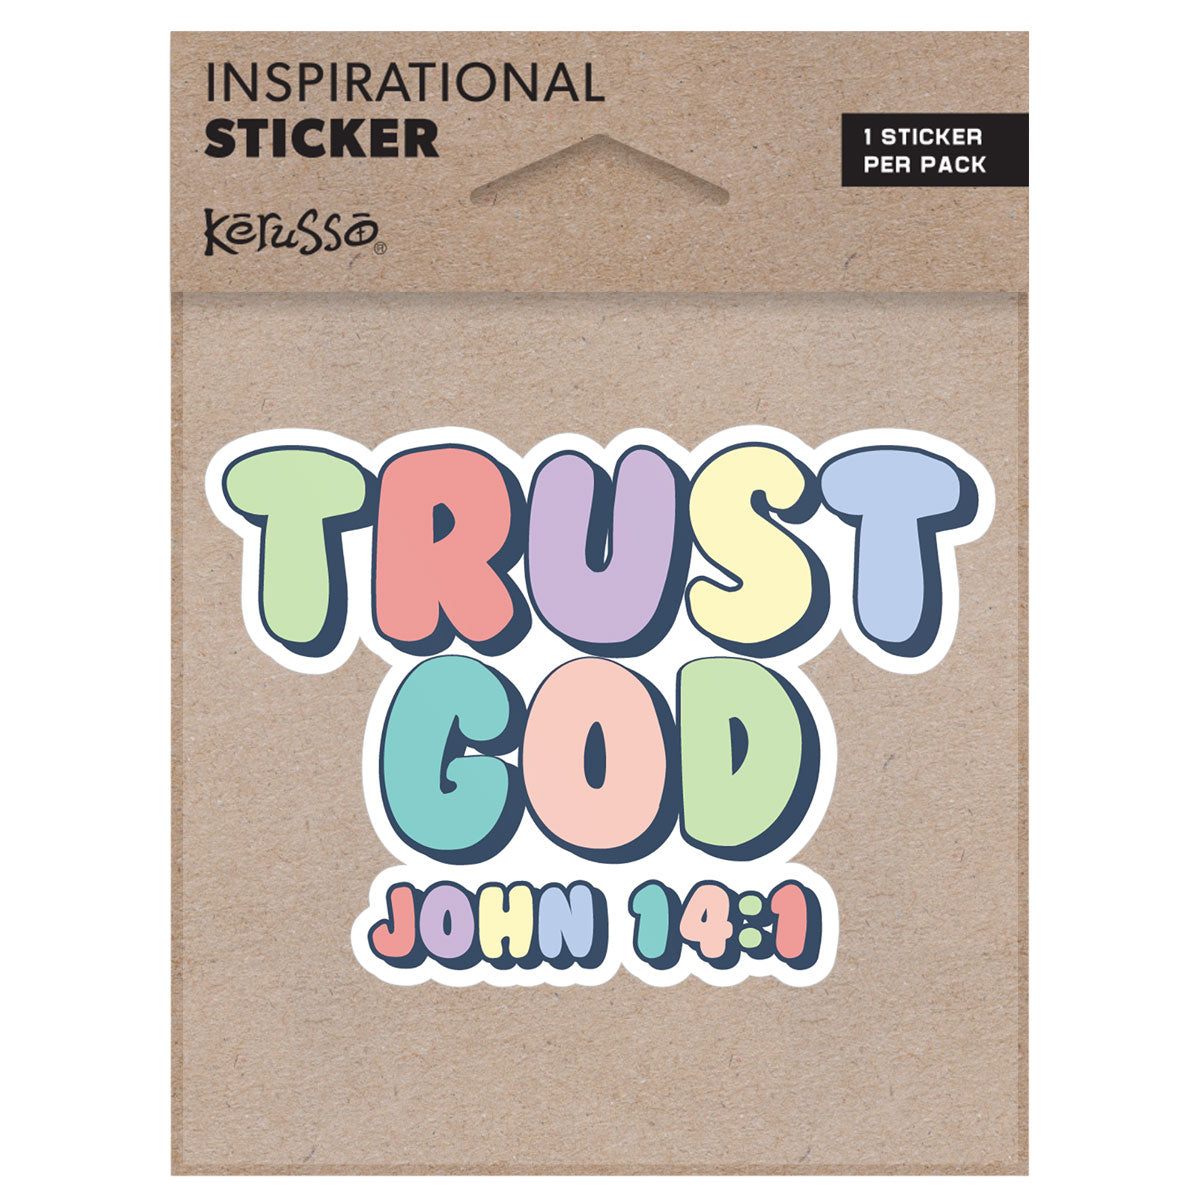 Kerusso Sticker Trust God